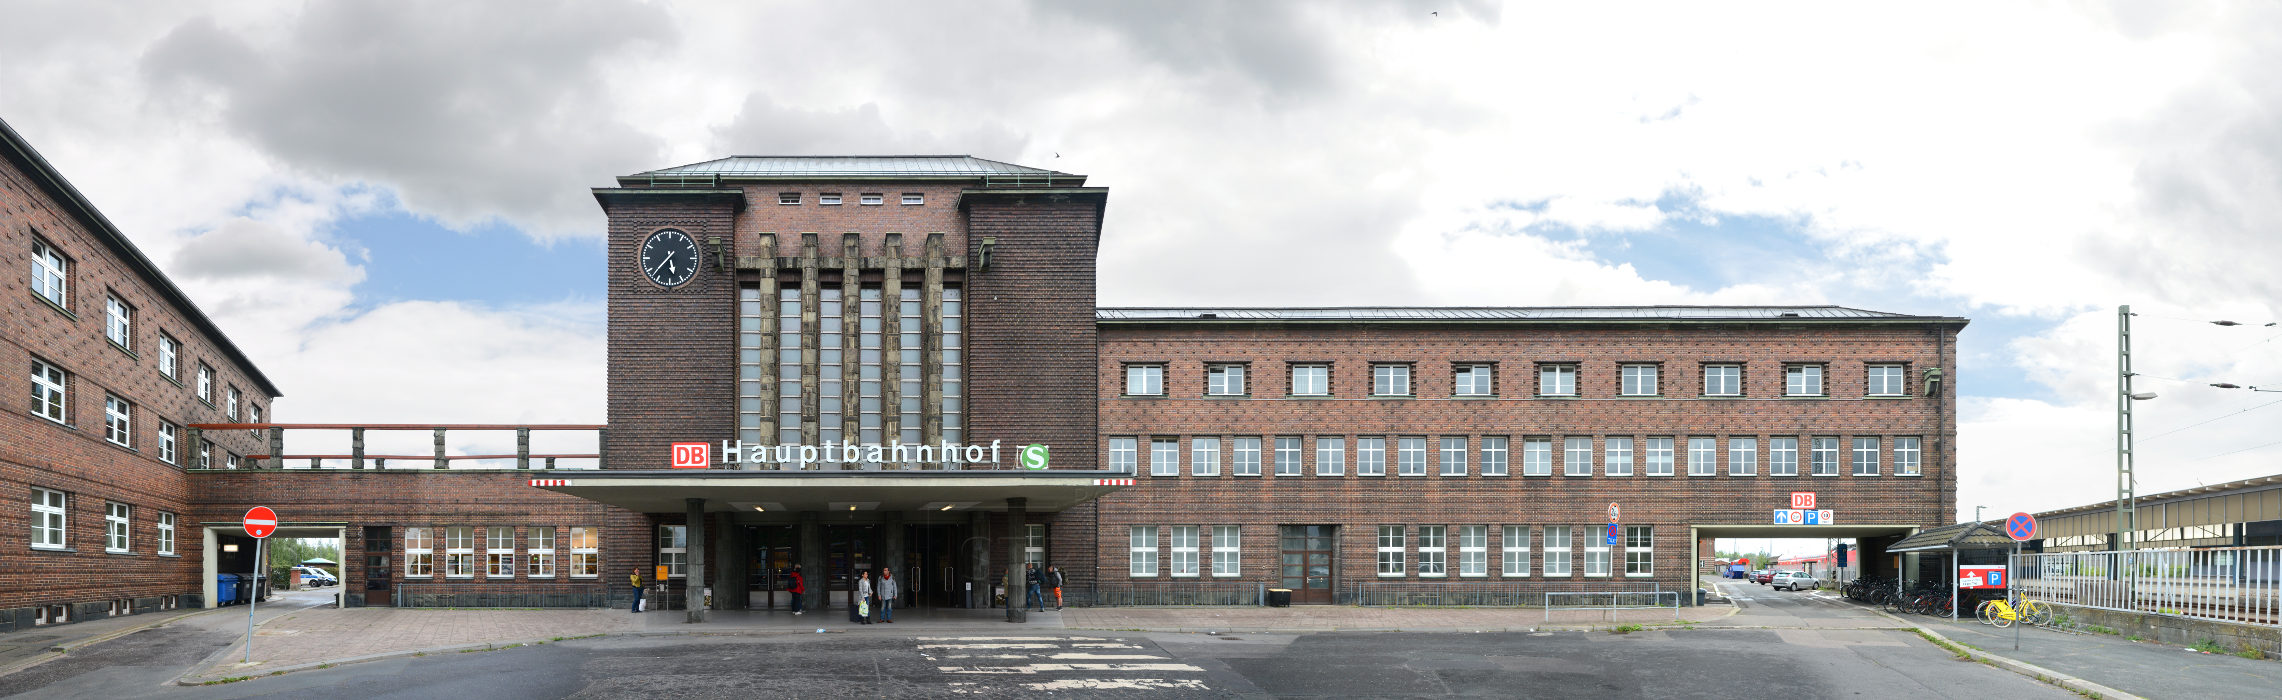 Bahnhof Zwickau Architektur Fassade Gebäude